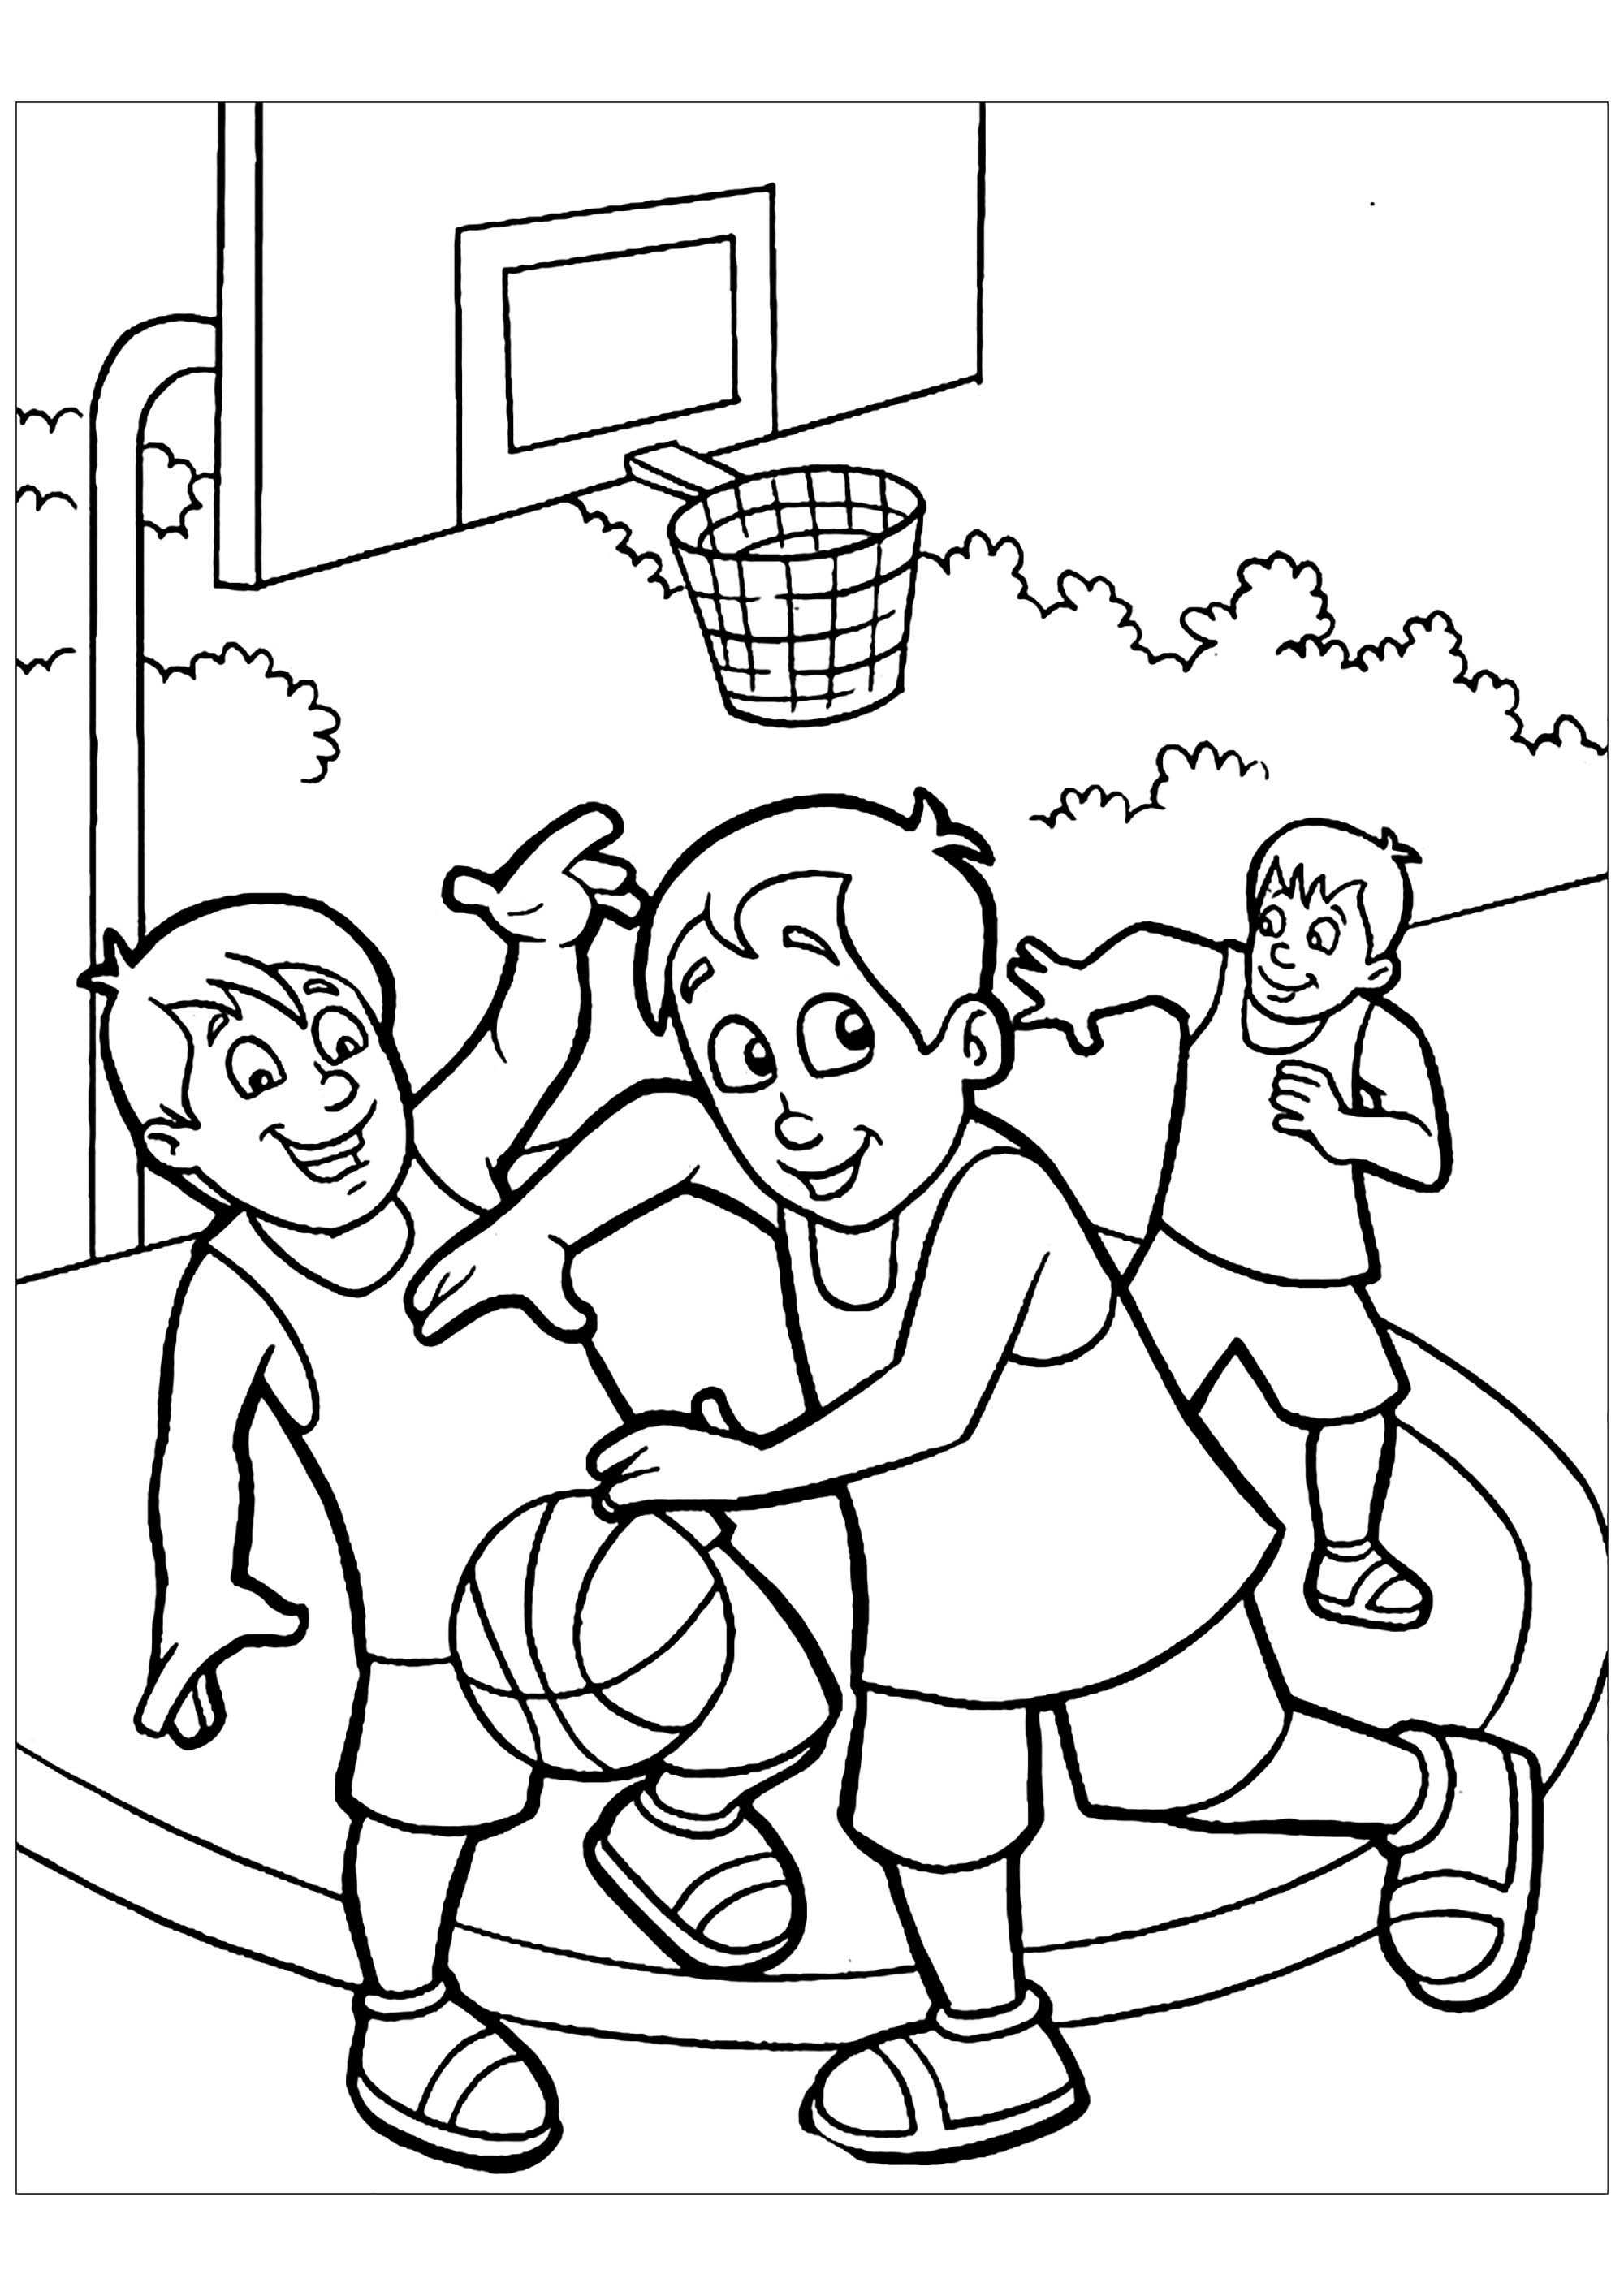 Coloriage De Basketball A Imprimer Gratuitement Coloriage Basketball Coloriages Pour Enfants